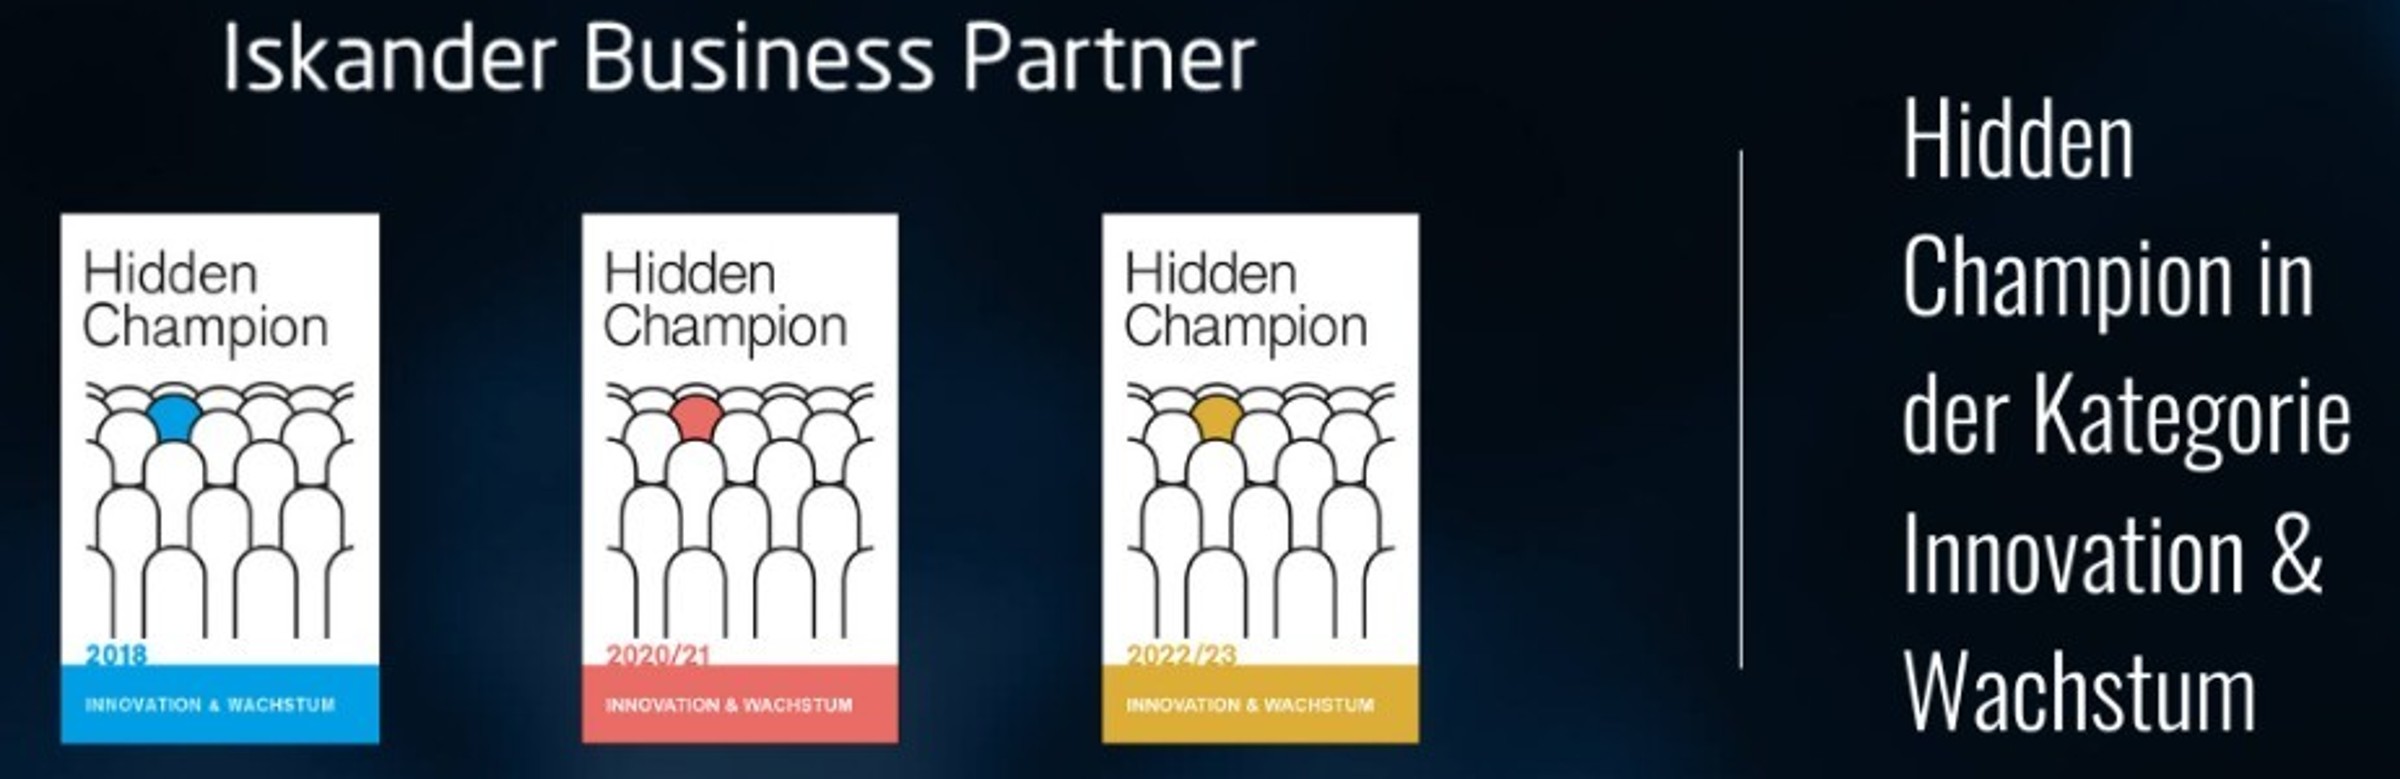 Hidden Champion: Iskander Business Partner